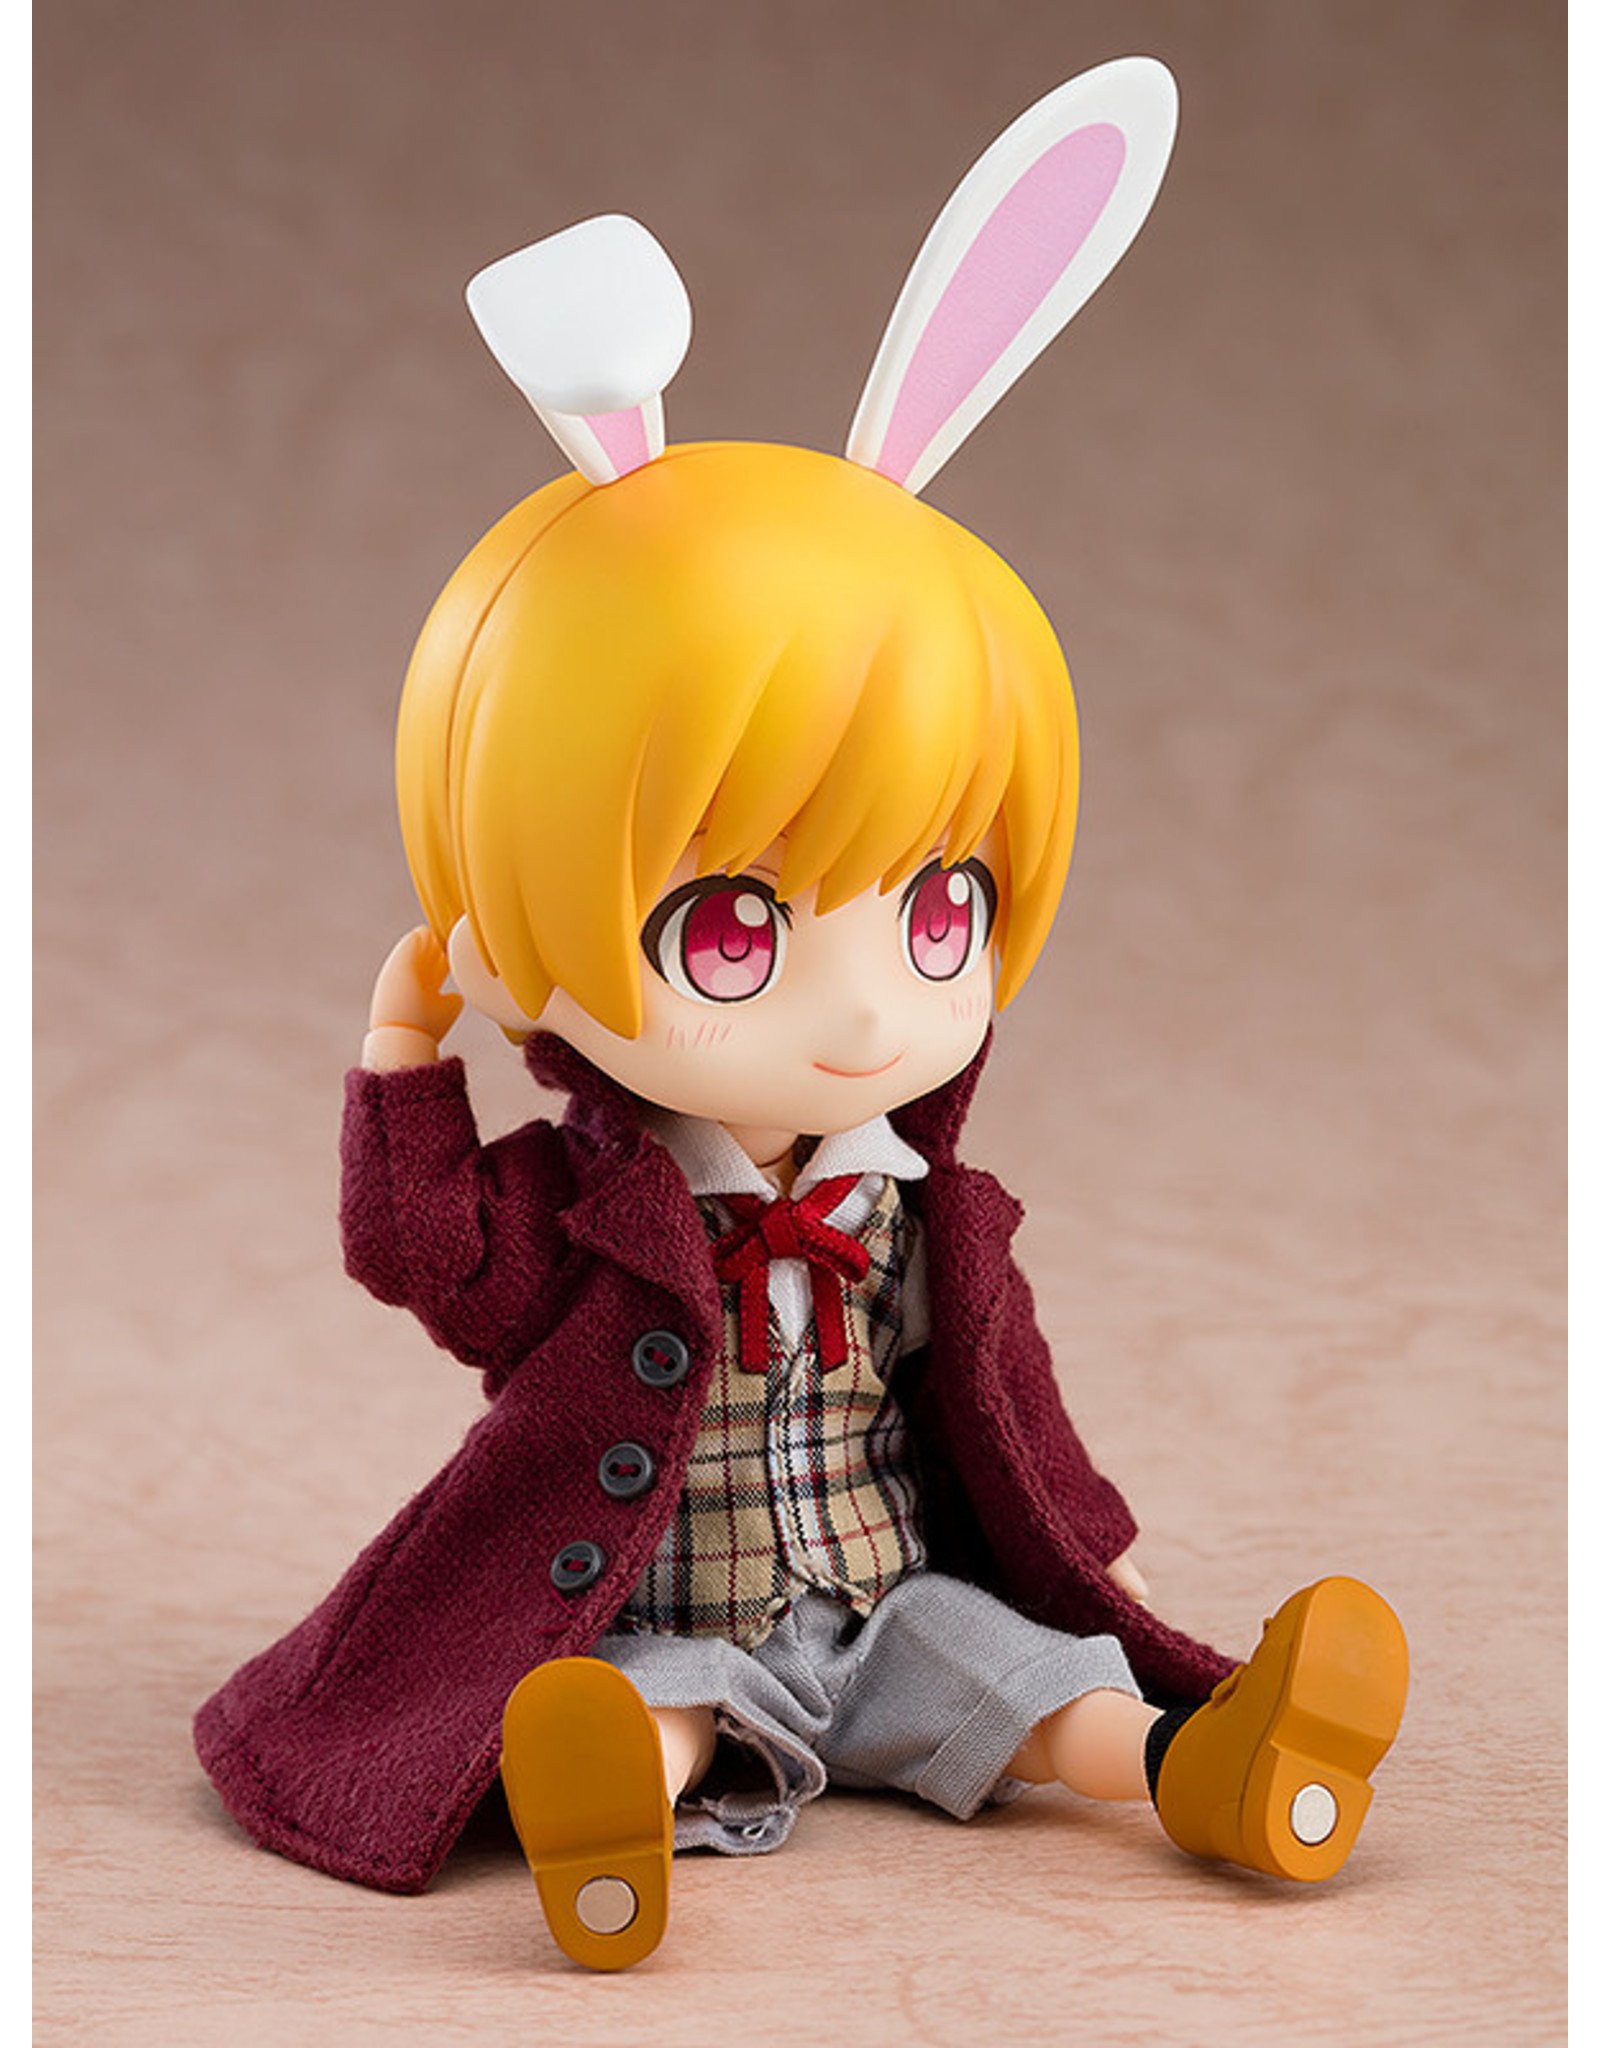 Goodsmile Nendoroid Doll White Rabbit